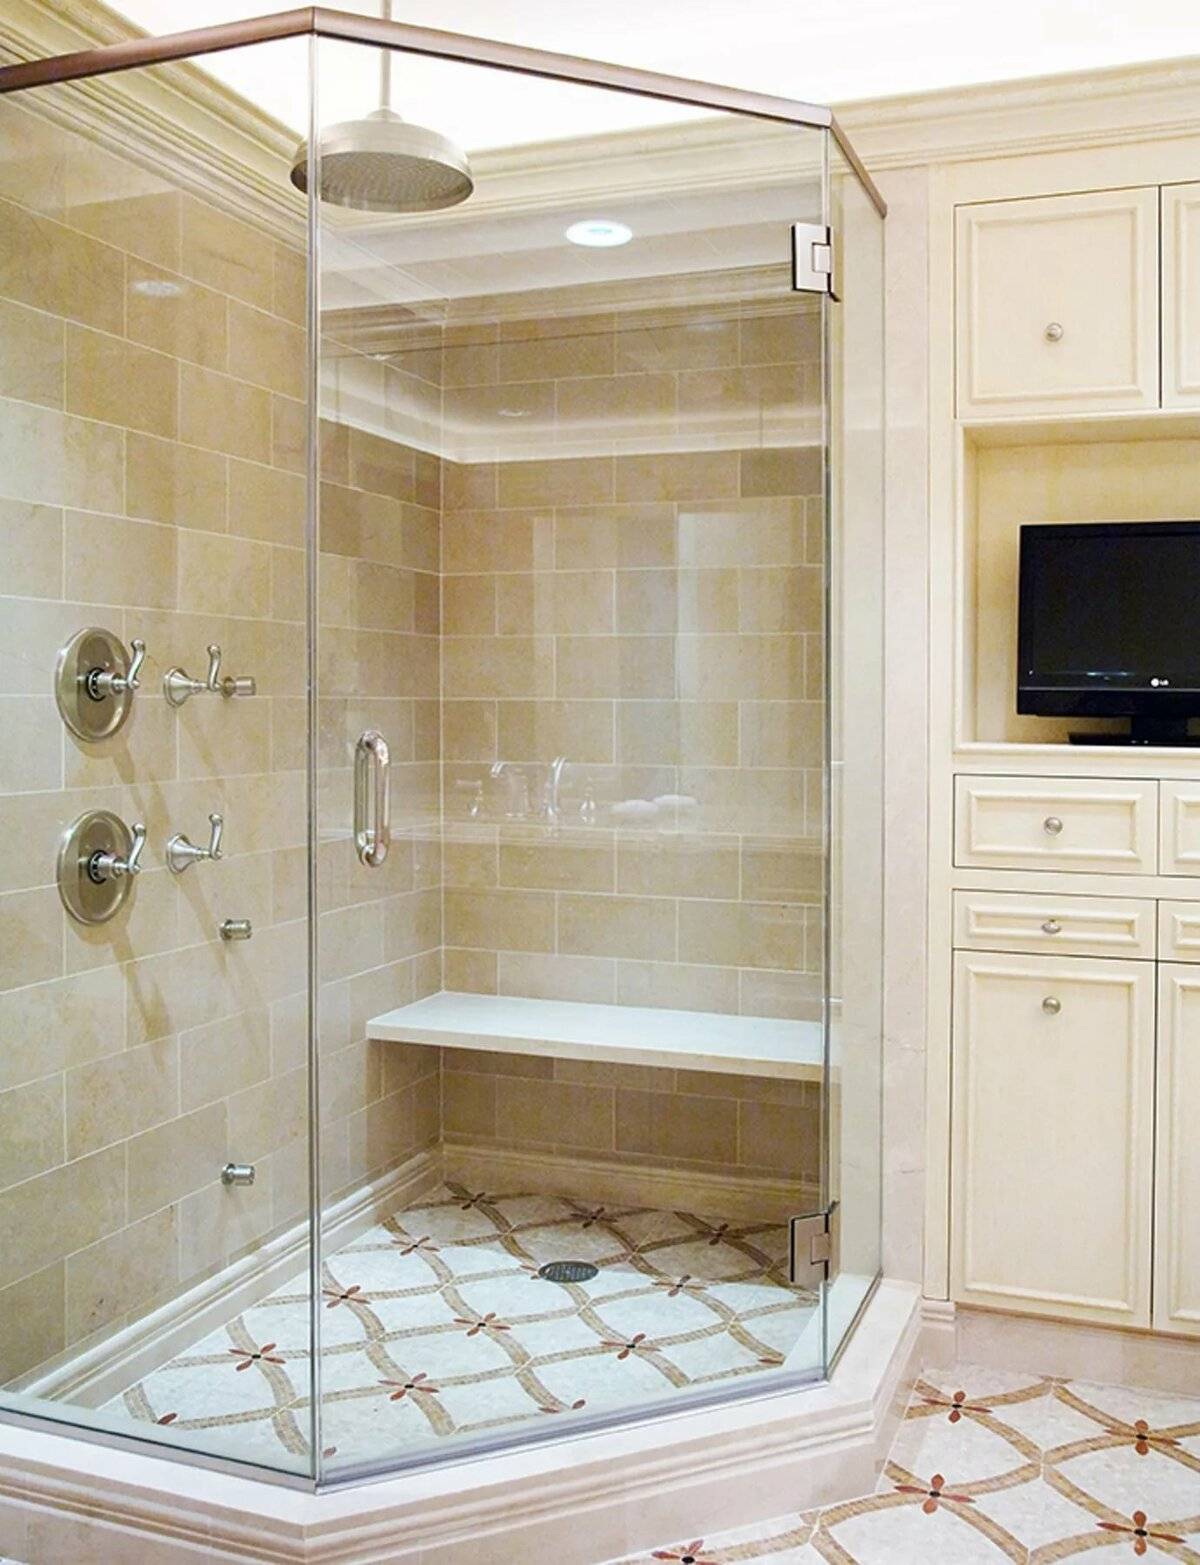 Дизайн душевой кабины в ванной комнате с туалетом, интерьер маленького санузла с угловым душем из стеклоблоков с керамическим поддоном